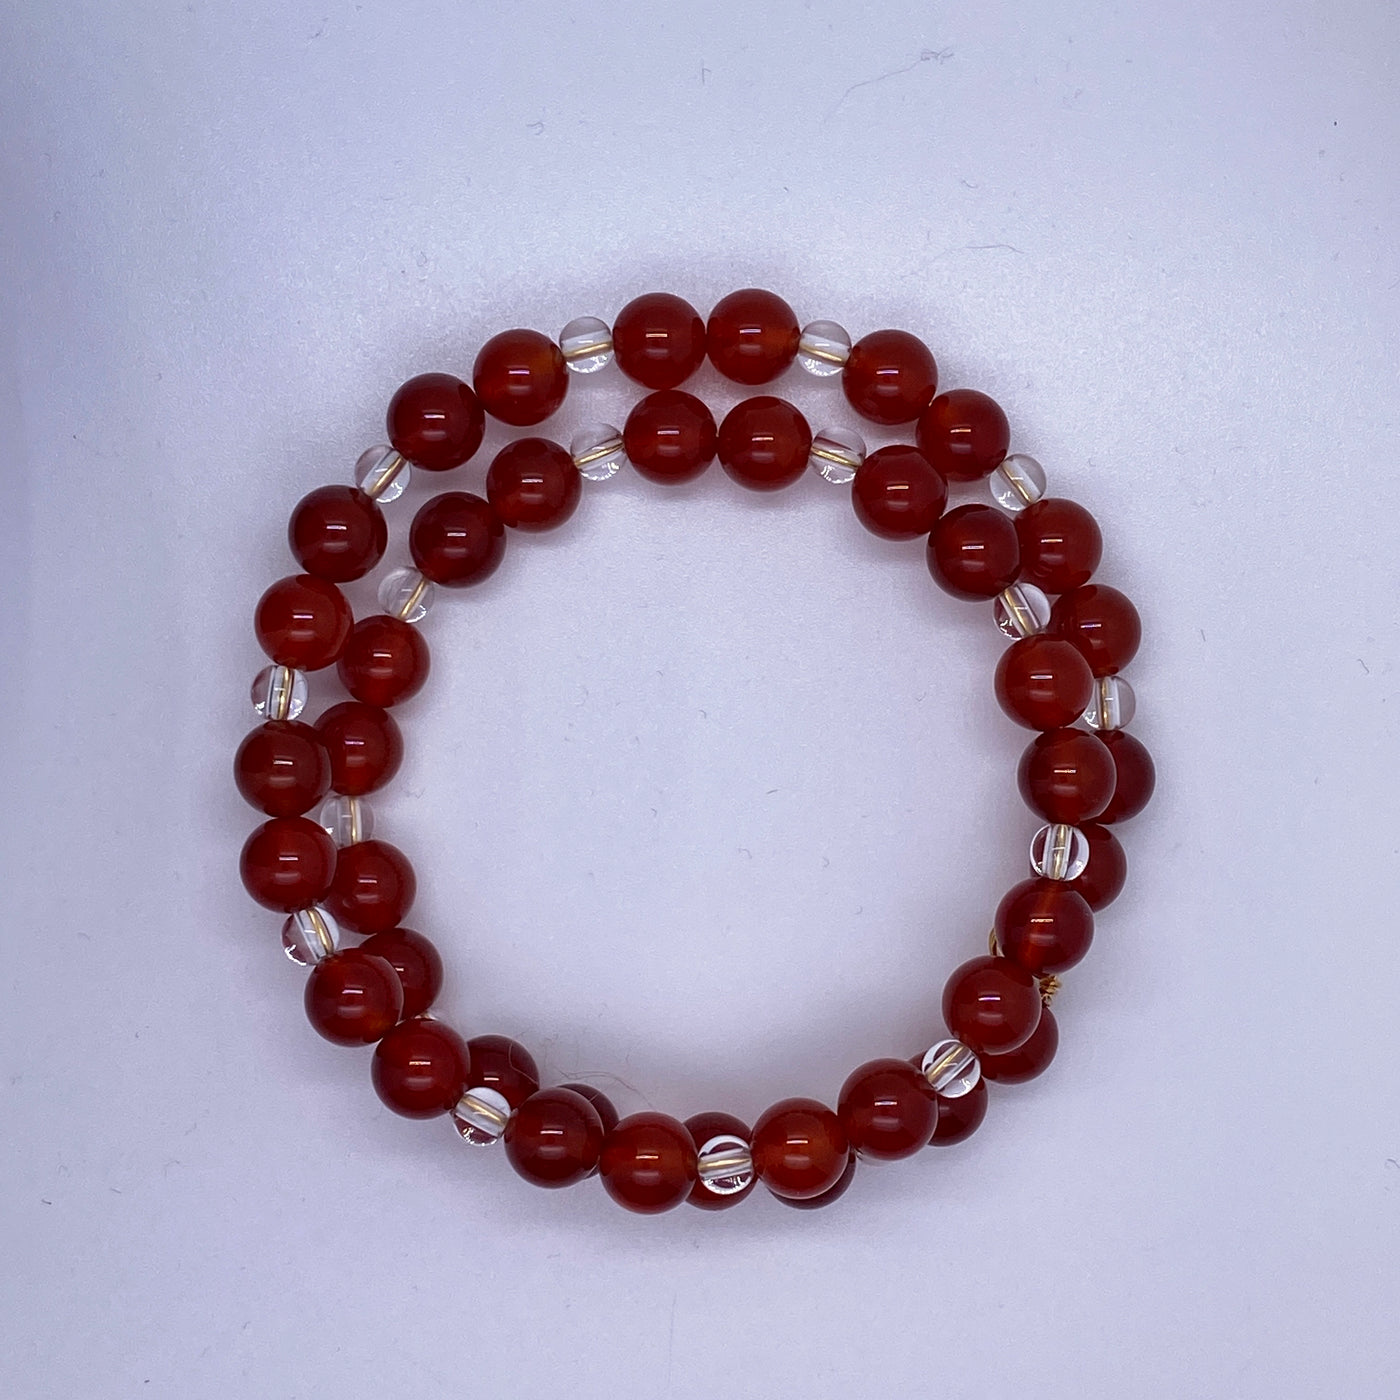 Red agate and white quartz medium pearls bracelet.